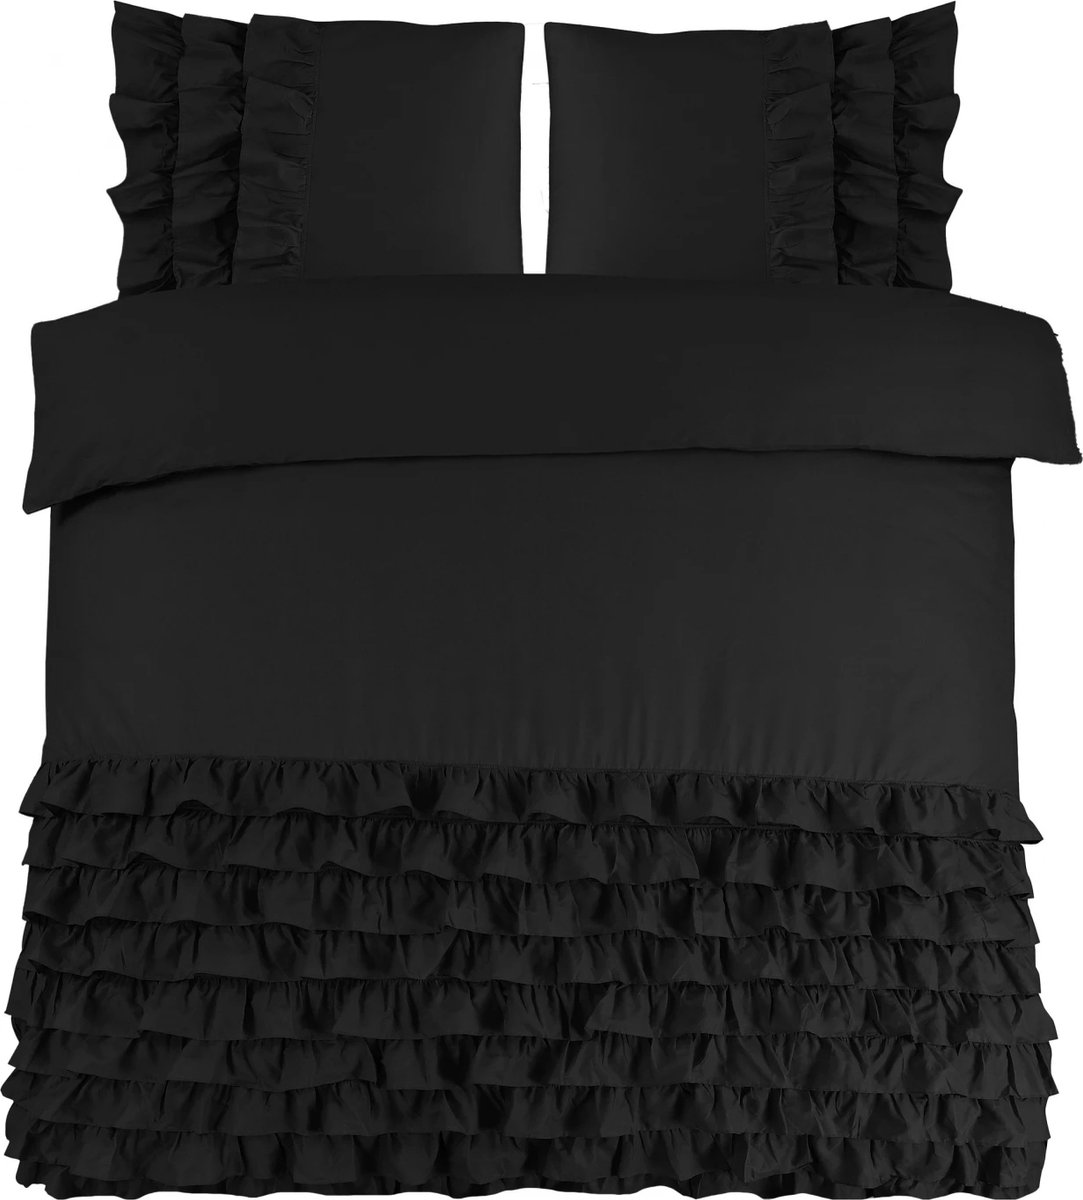 Luxe percaline katoen geweven dekbedovertrek Rosalinde zwart - 240x200/220 (lits-jumeaux) - fijne kwaliteit - zacht en ademend - stijlvolle uitstraling - met handige drukknopen